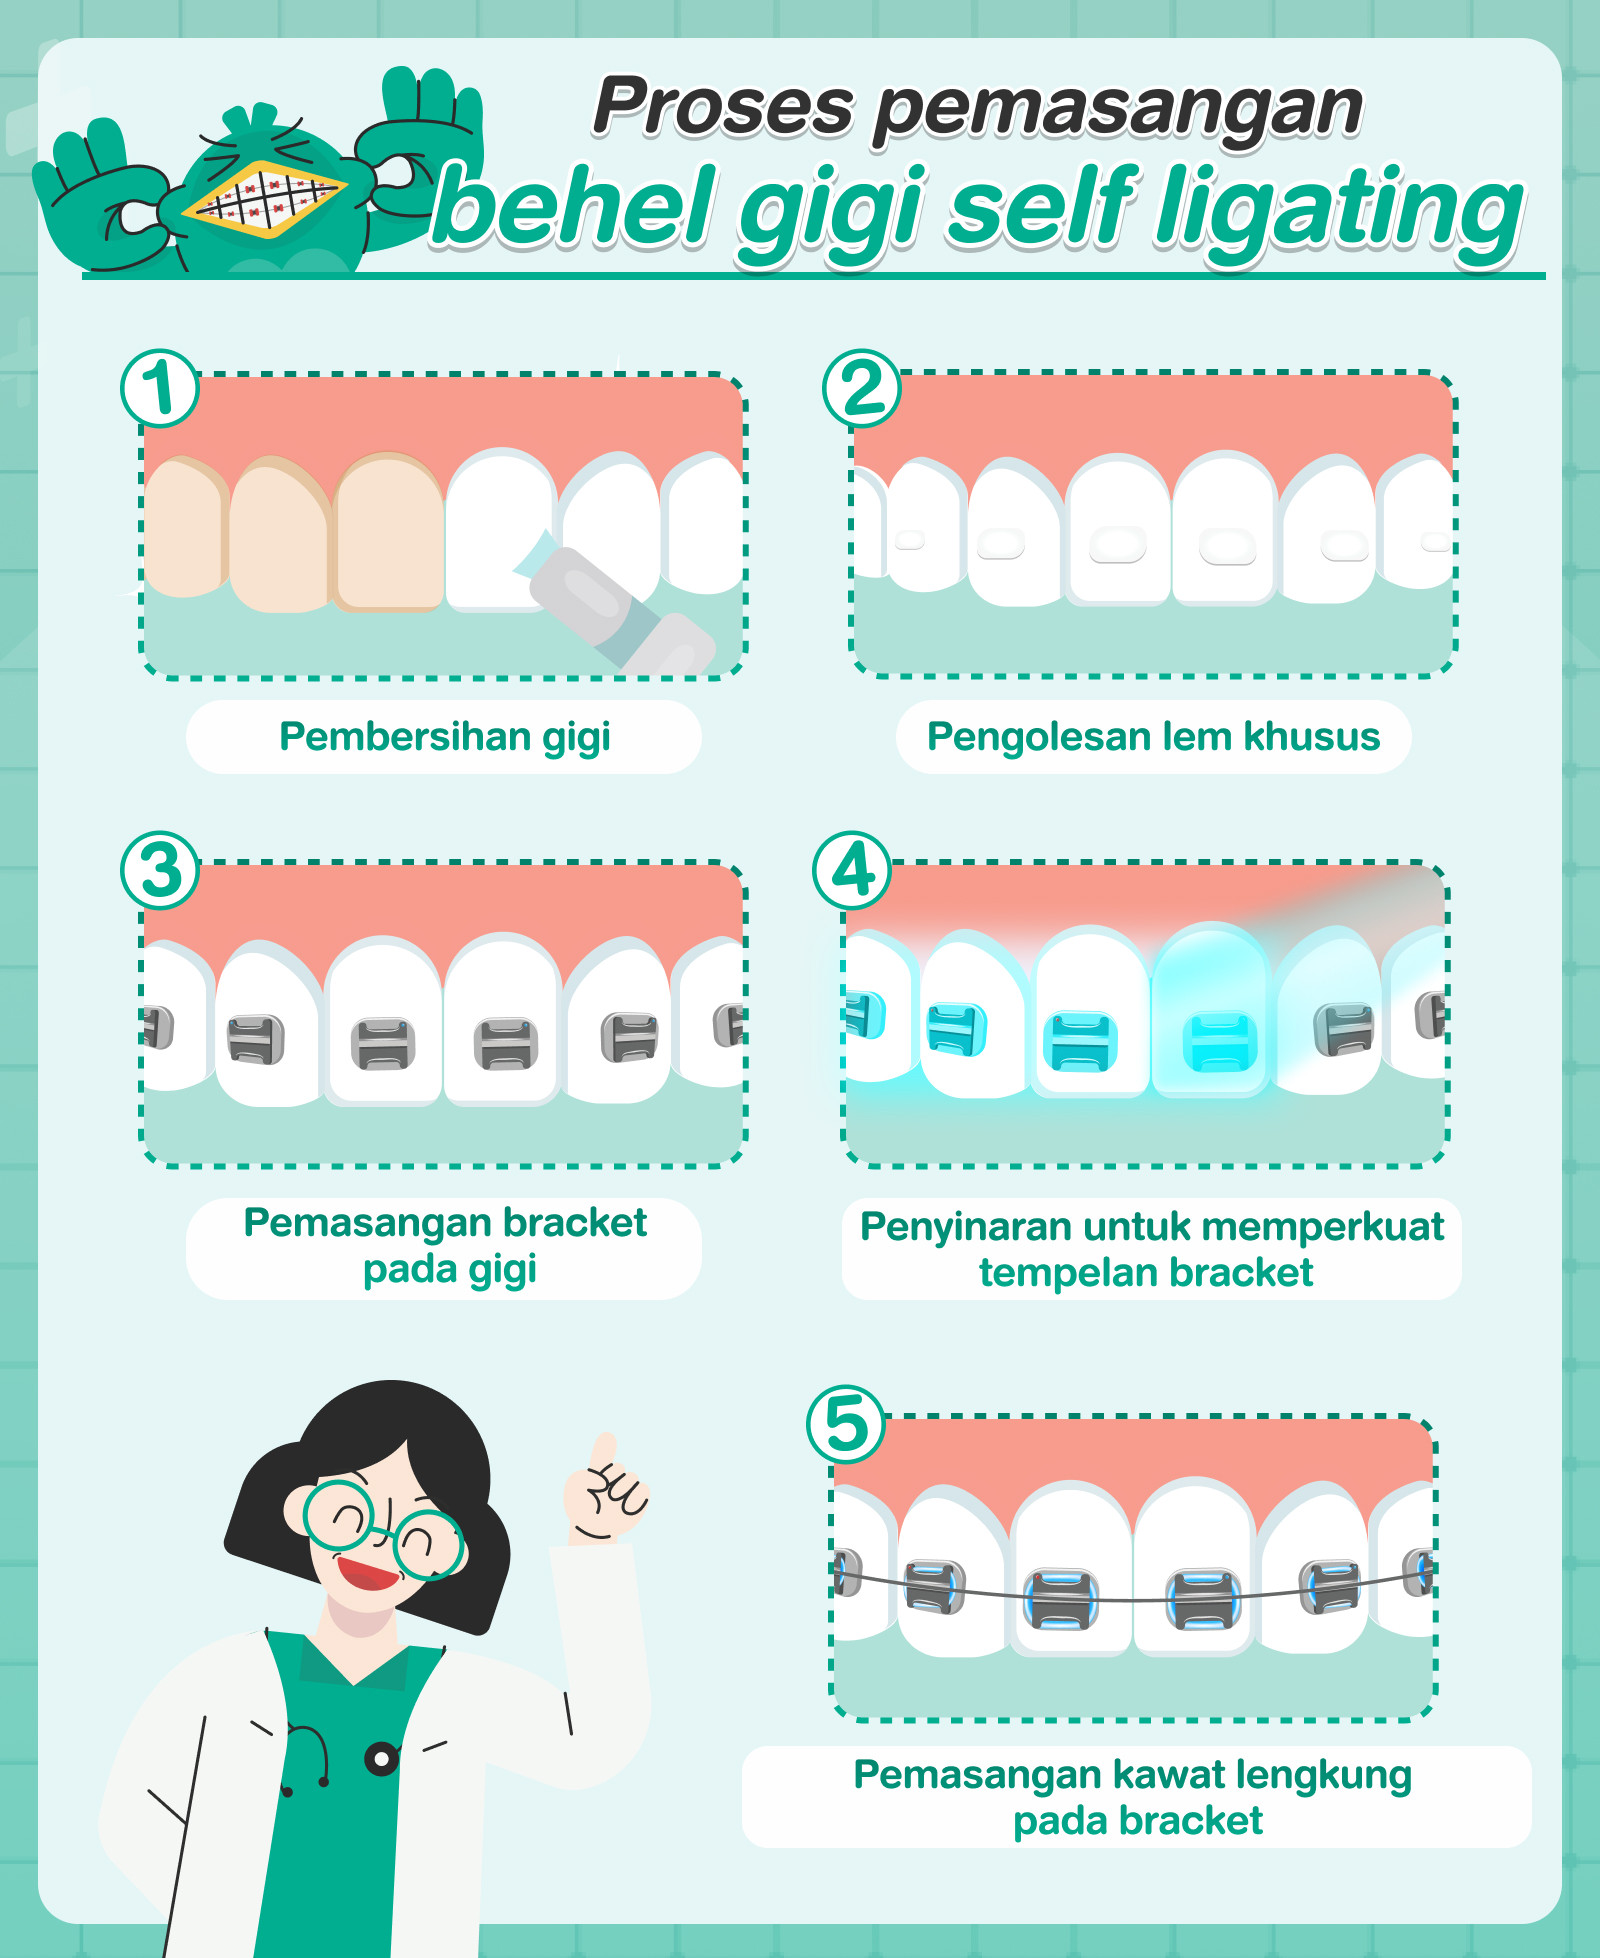 Proses pemasangan behel gigi self ligating